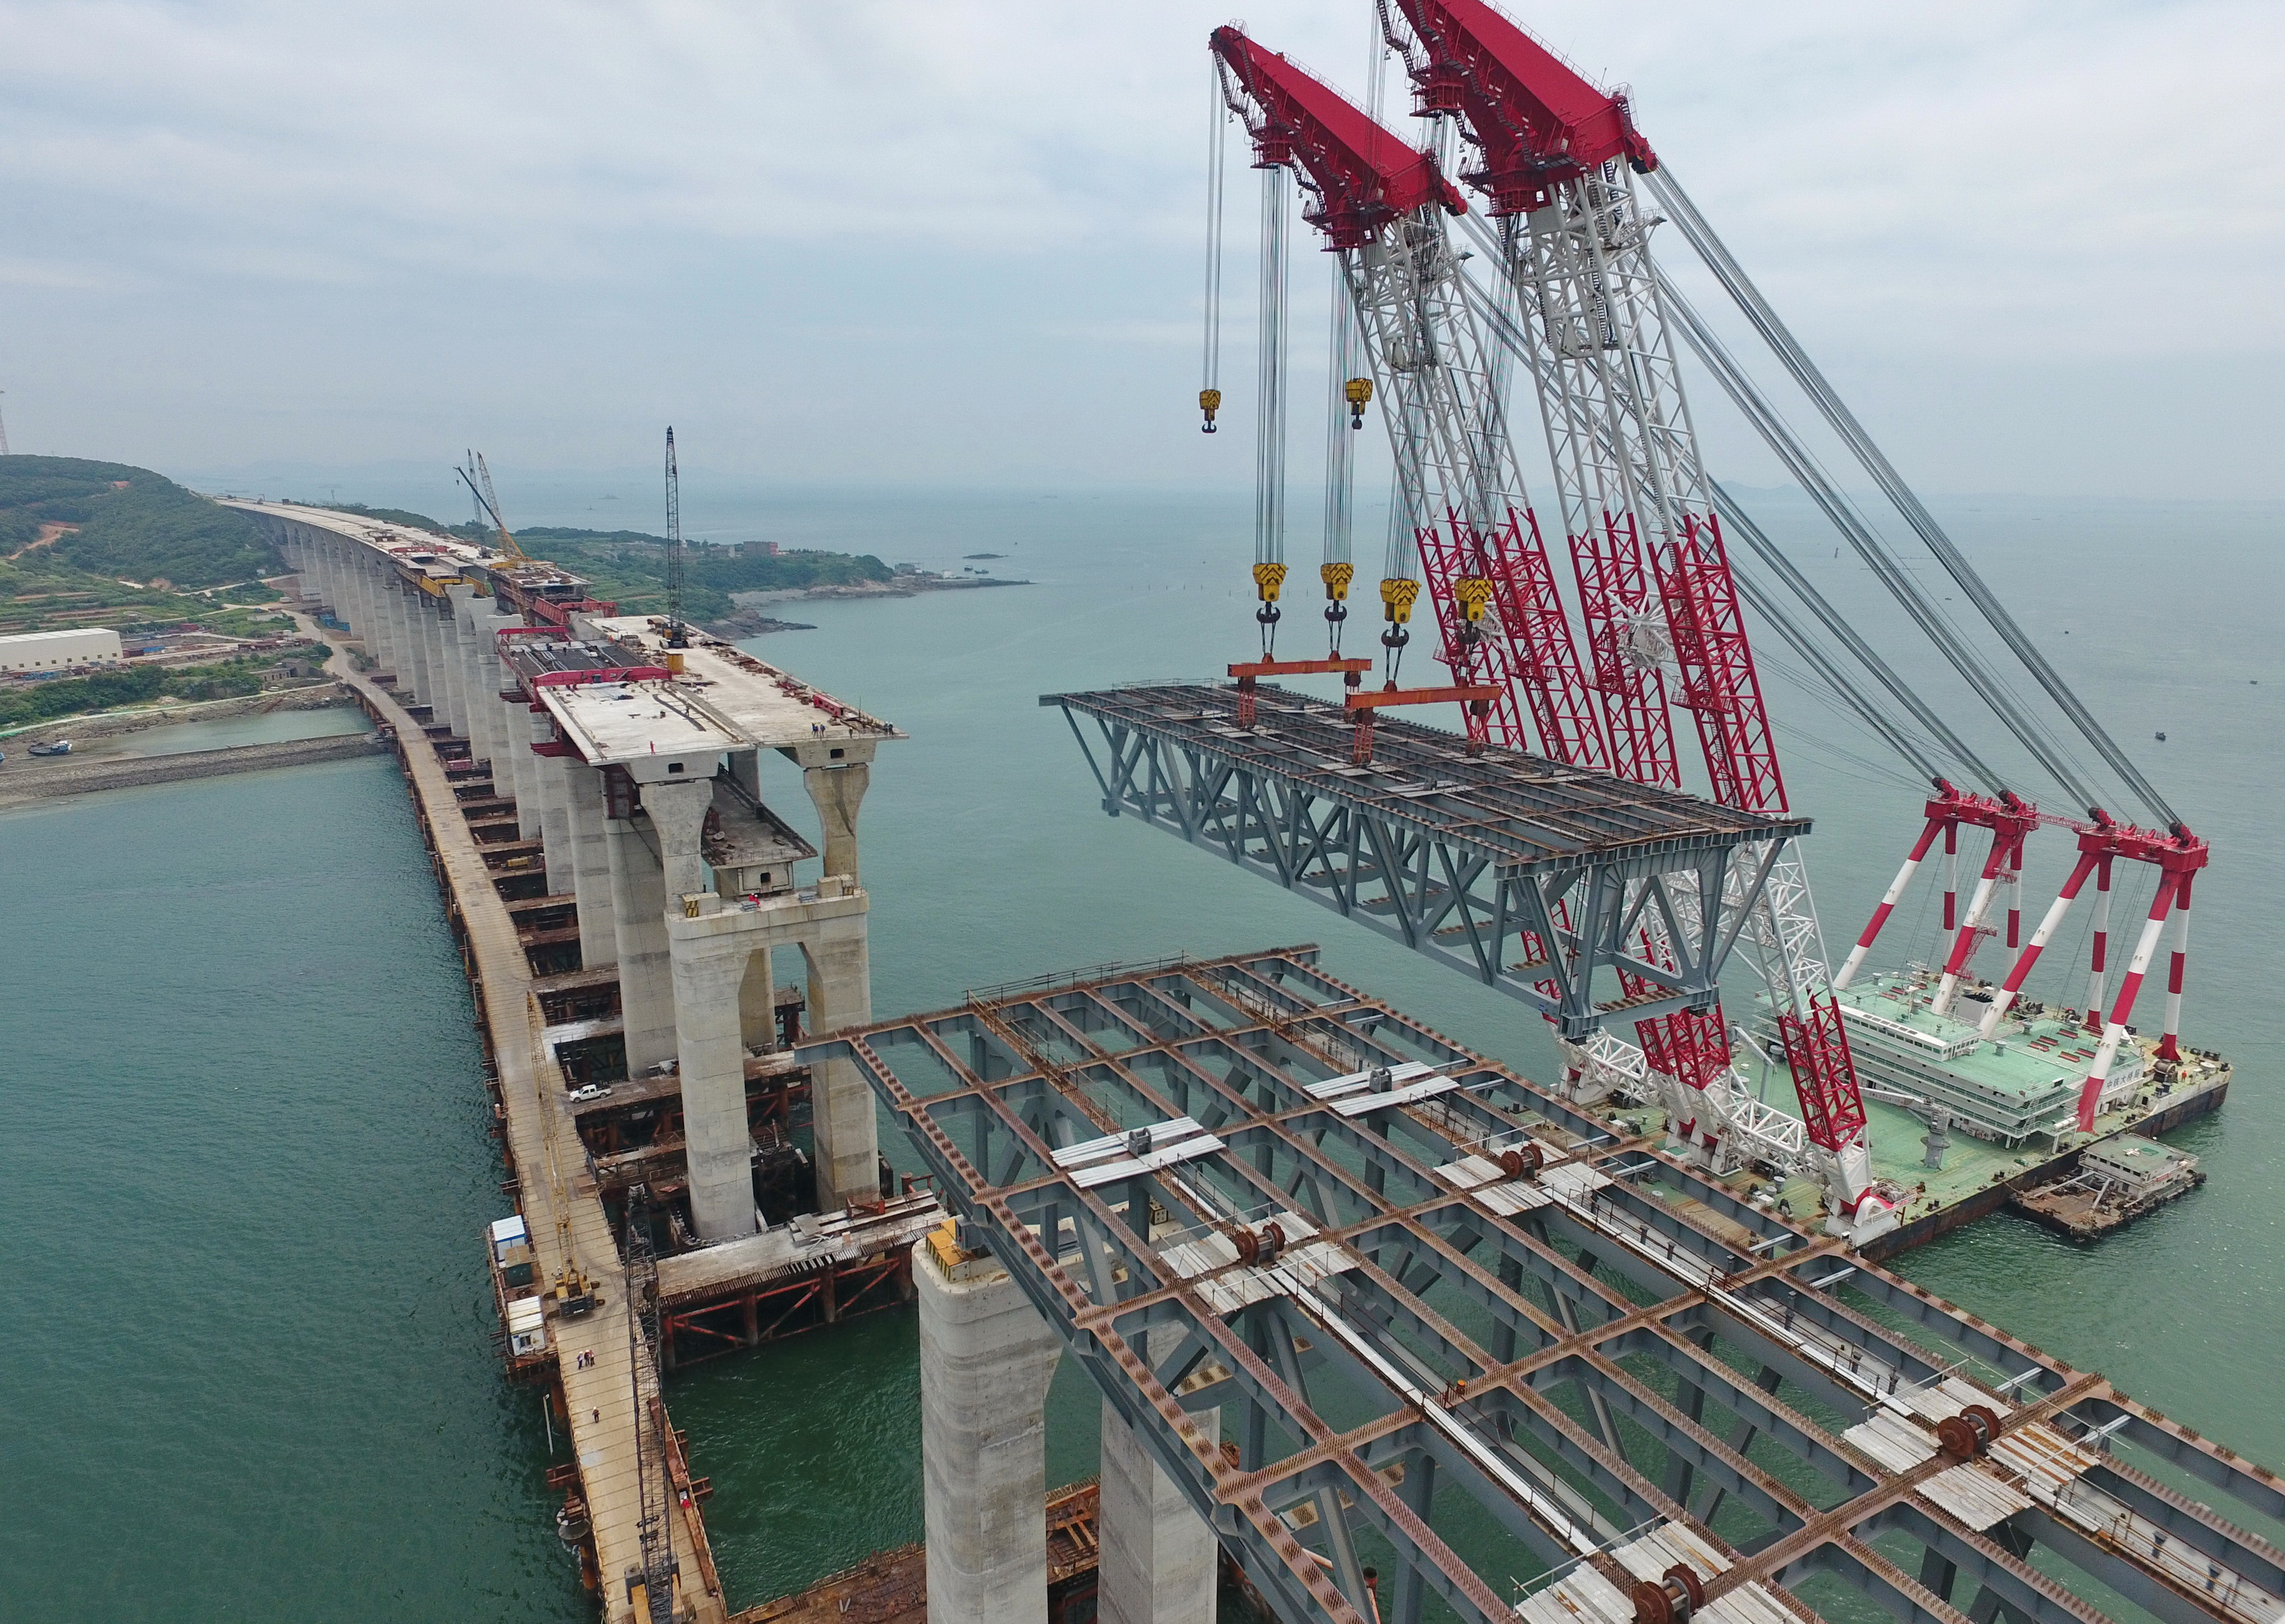 平潭海峡公铁两用大桥全桥非通航孔钢桁梁全部架设完成